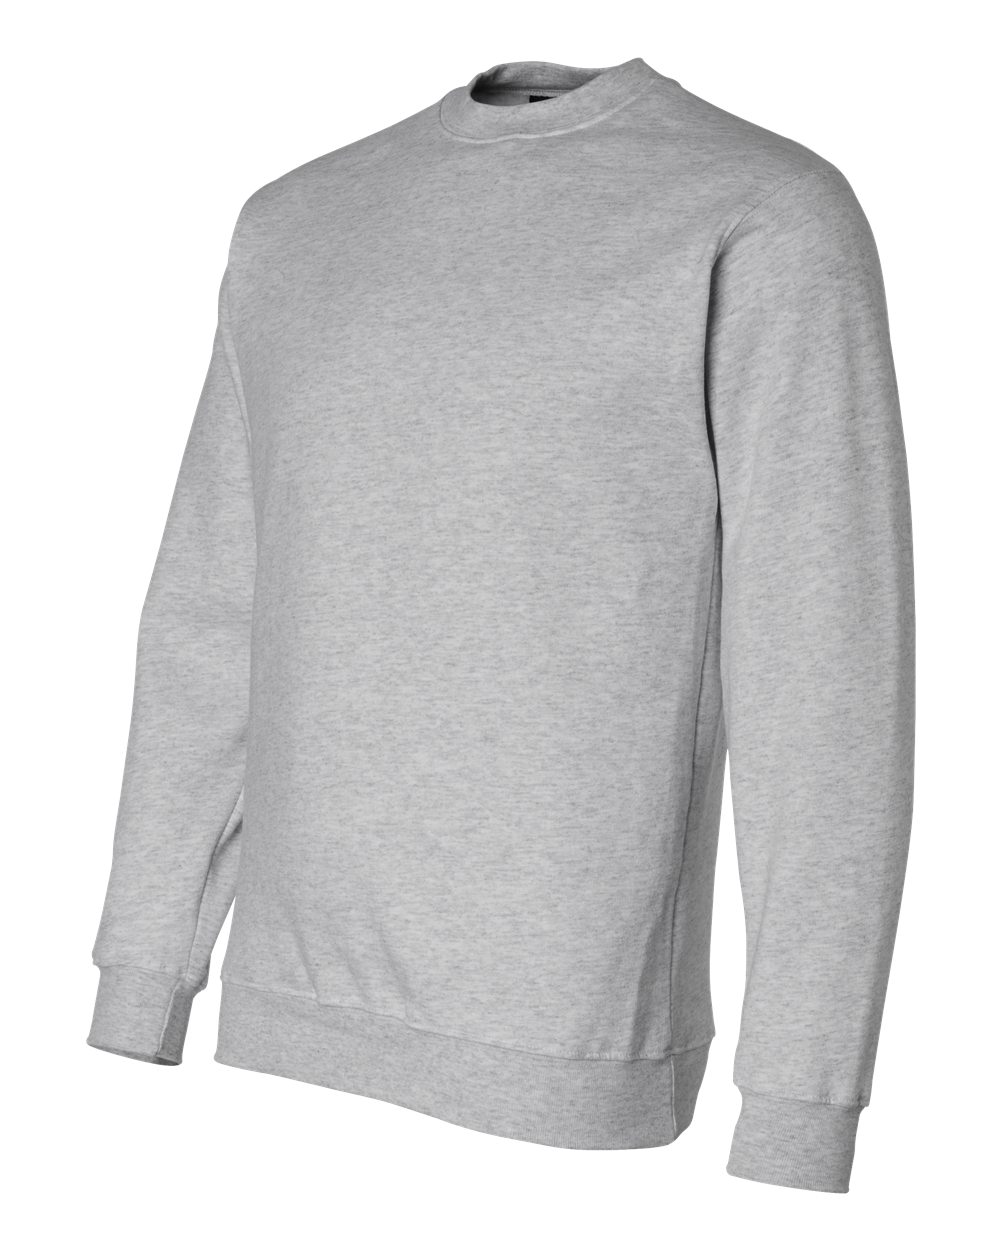 Bayside 1102 Crewneck Sweatshirt $29.52 - Sweatshirts